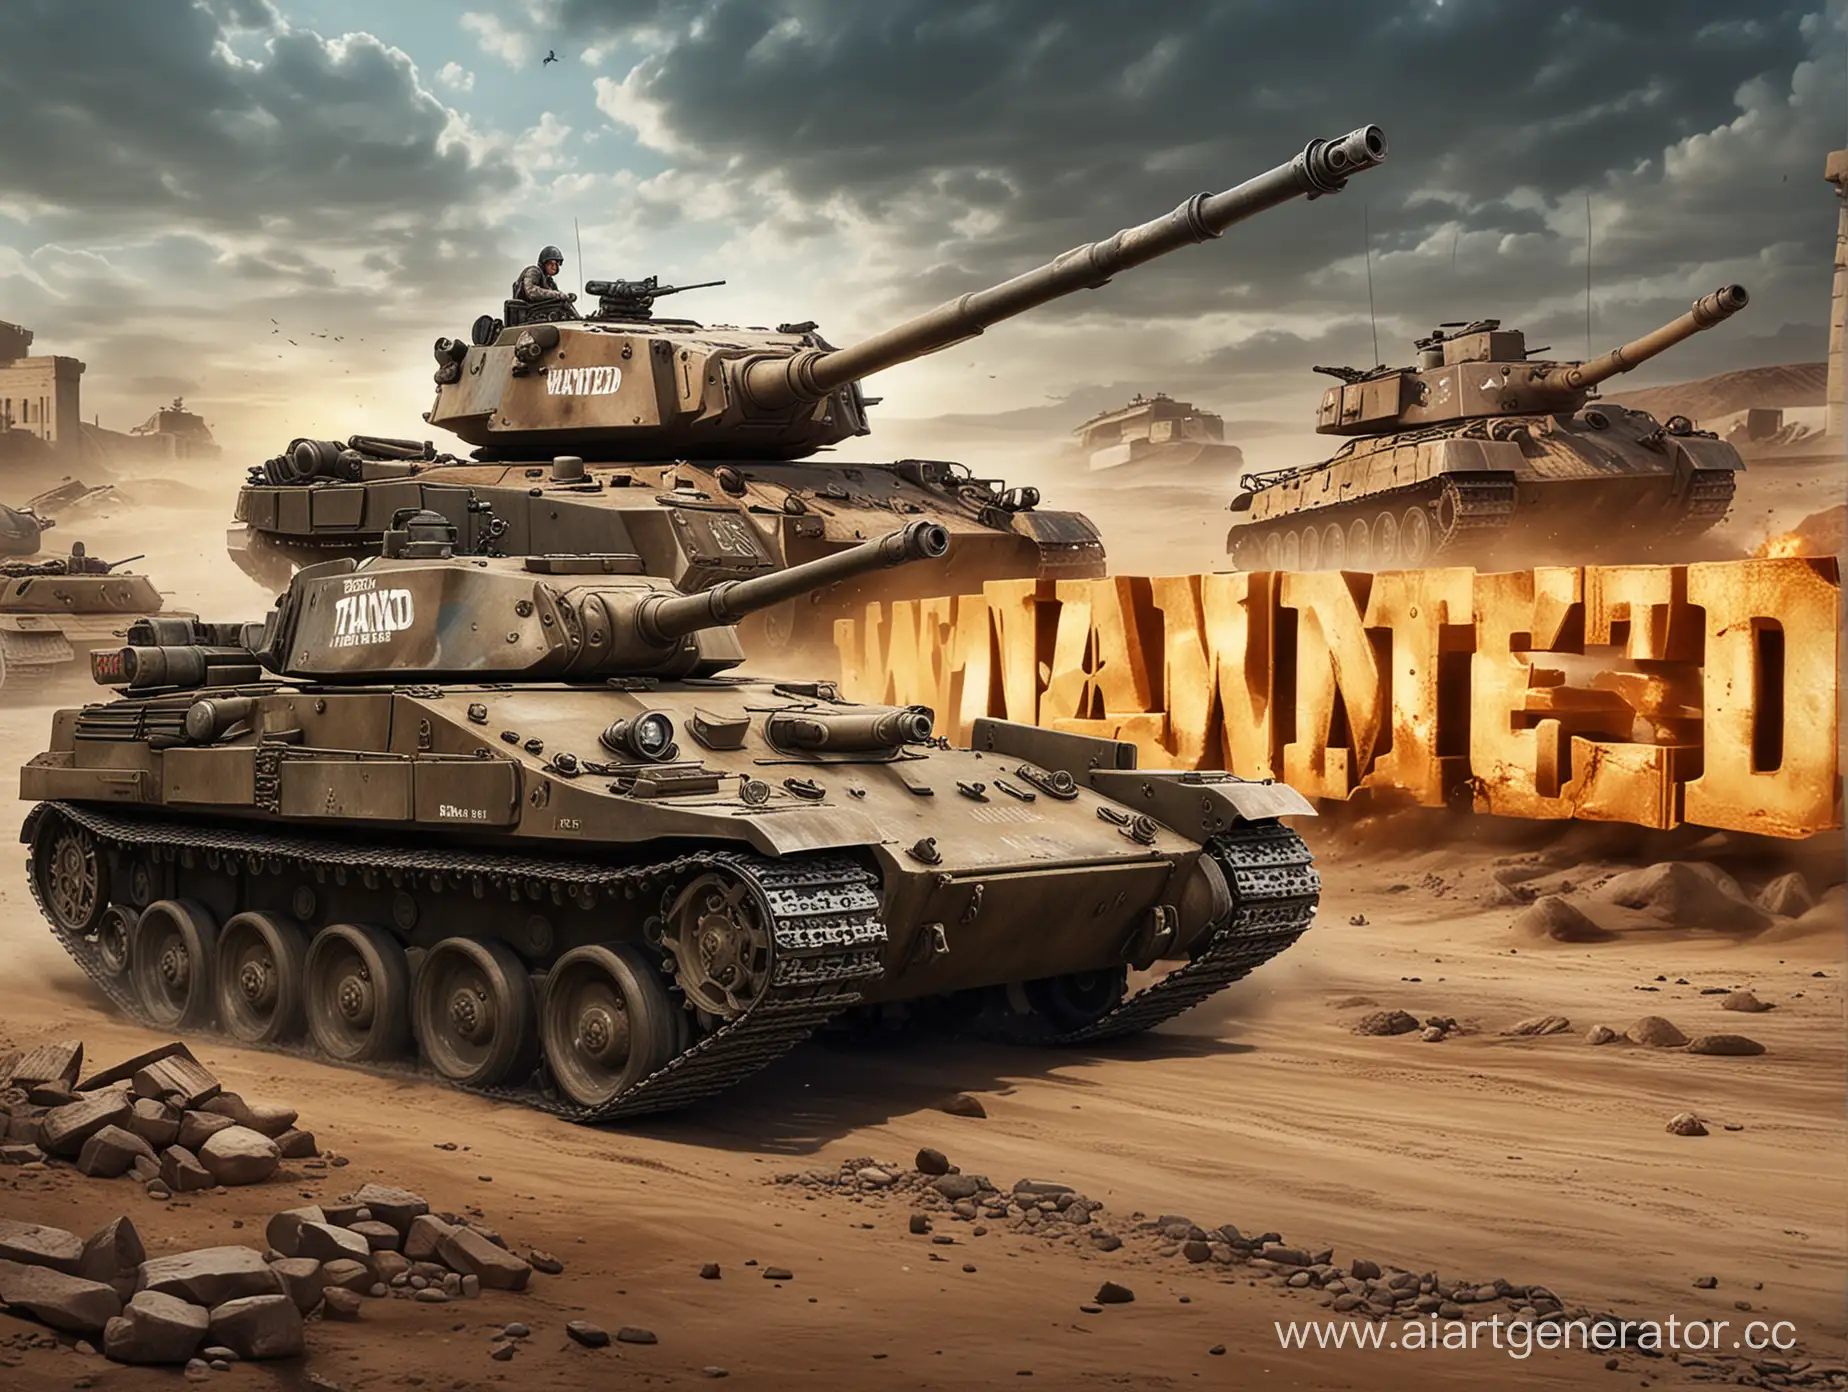 надпись "WANTED" на фоне с танком из игры "Танки Онлайн"
